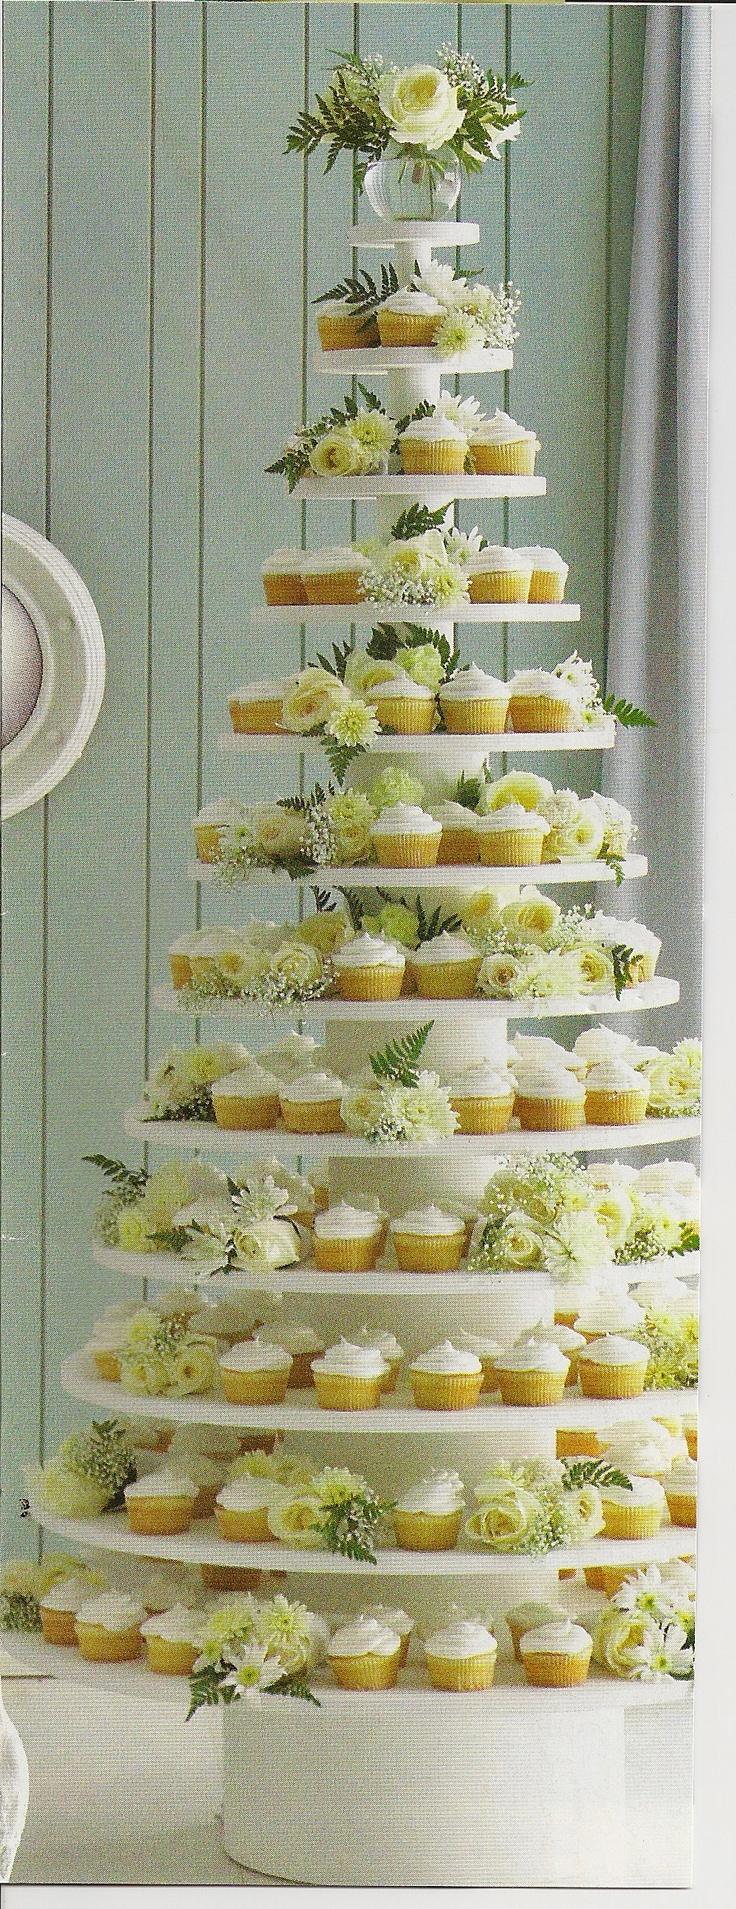 زفاف - # الكعك الزفاف